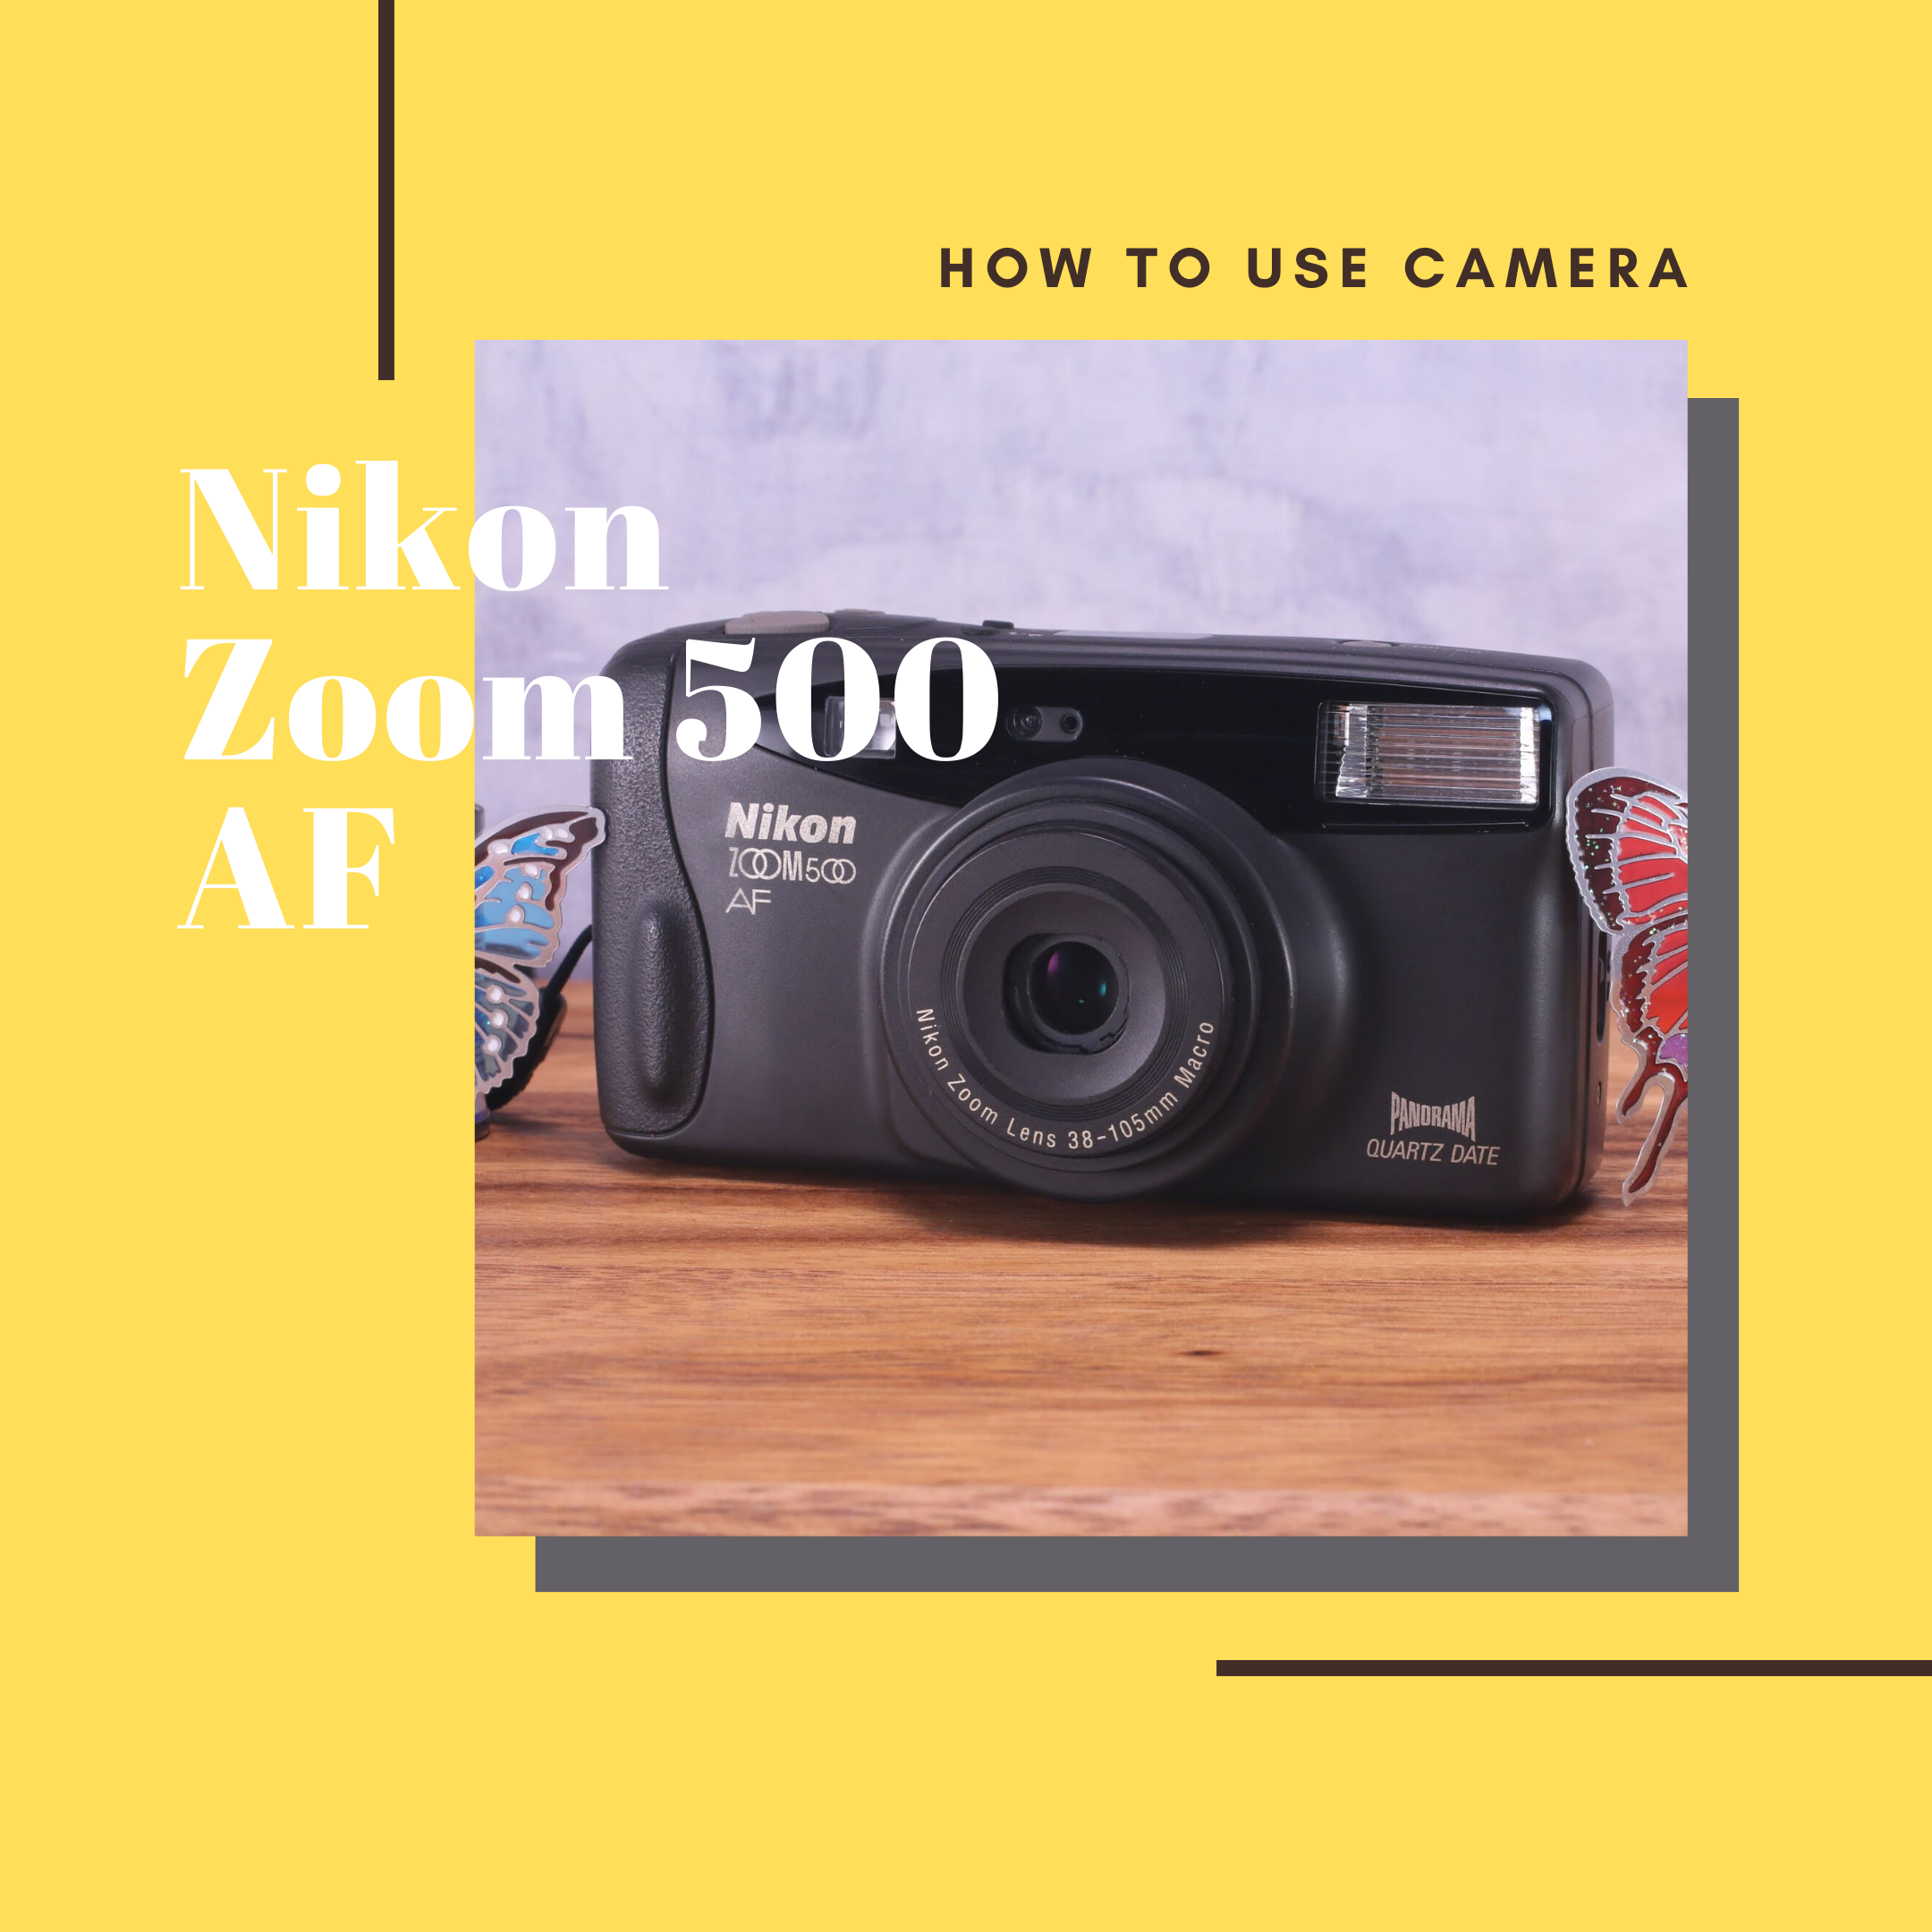 ハイクオリティ Nikon ZOOM 500 AF ストラップ付き sushitai.com.mx